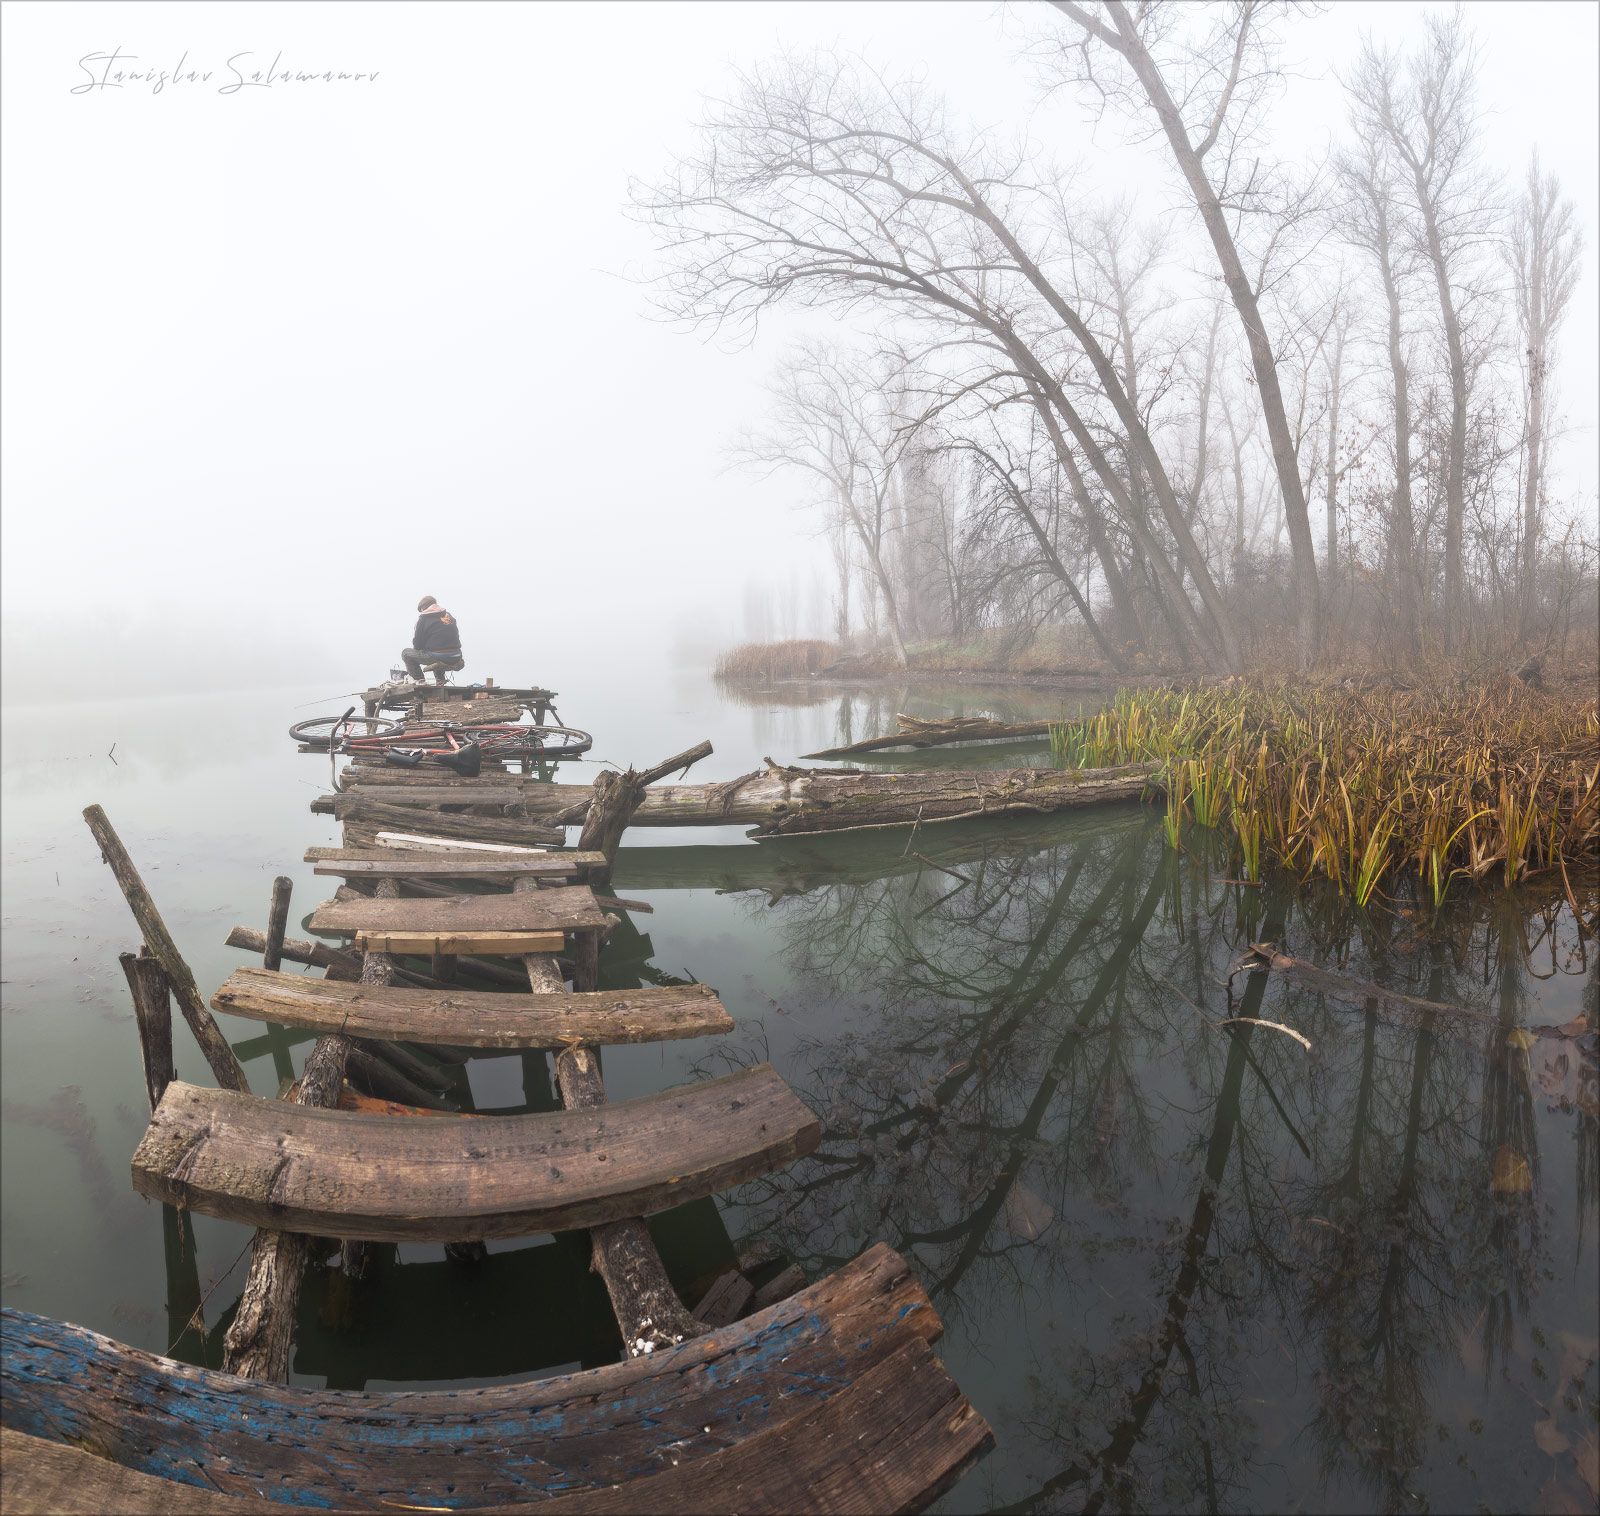 утро,молчание, невесомость, ноябрь, осень, отражения, панорама, рыбак, тишина, туман, Станислав Саламанов